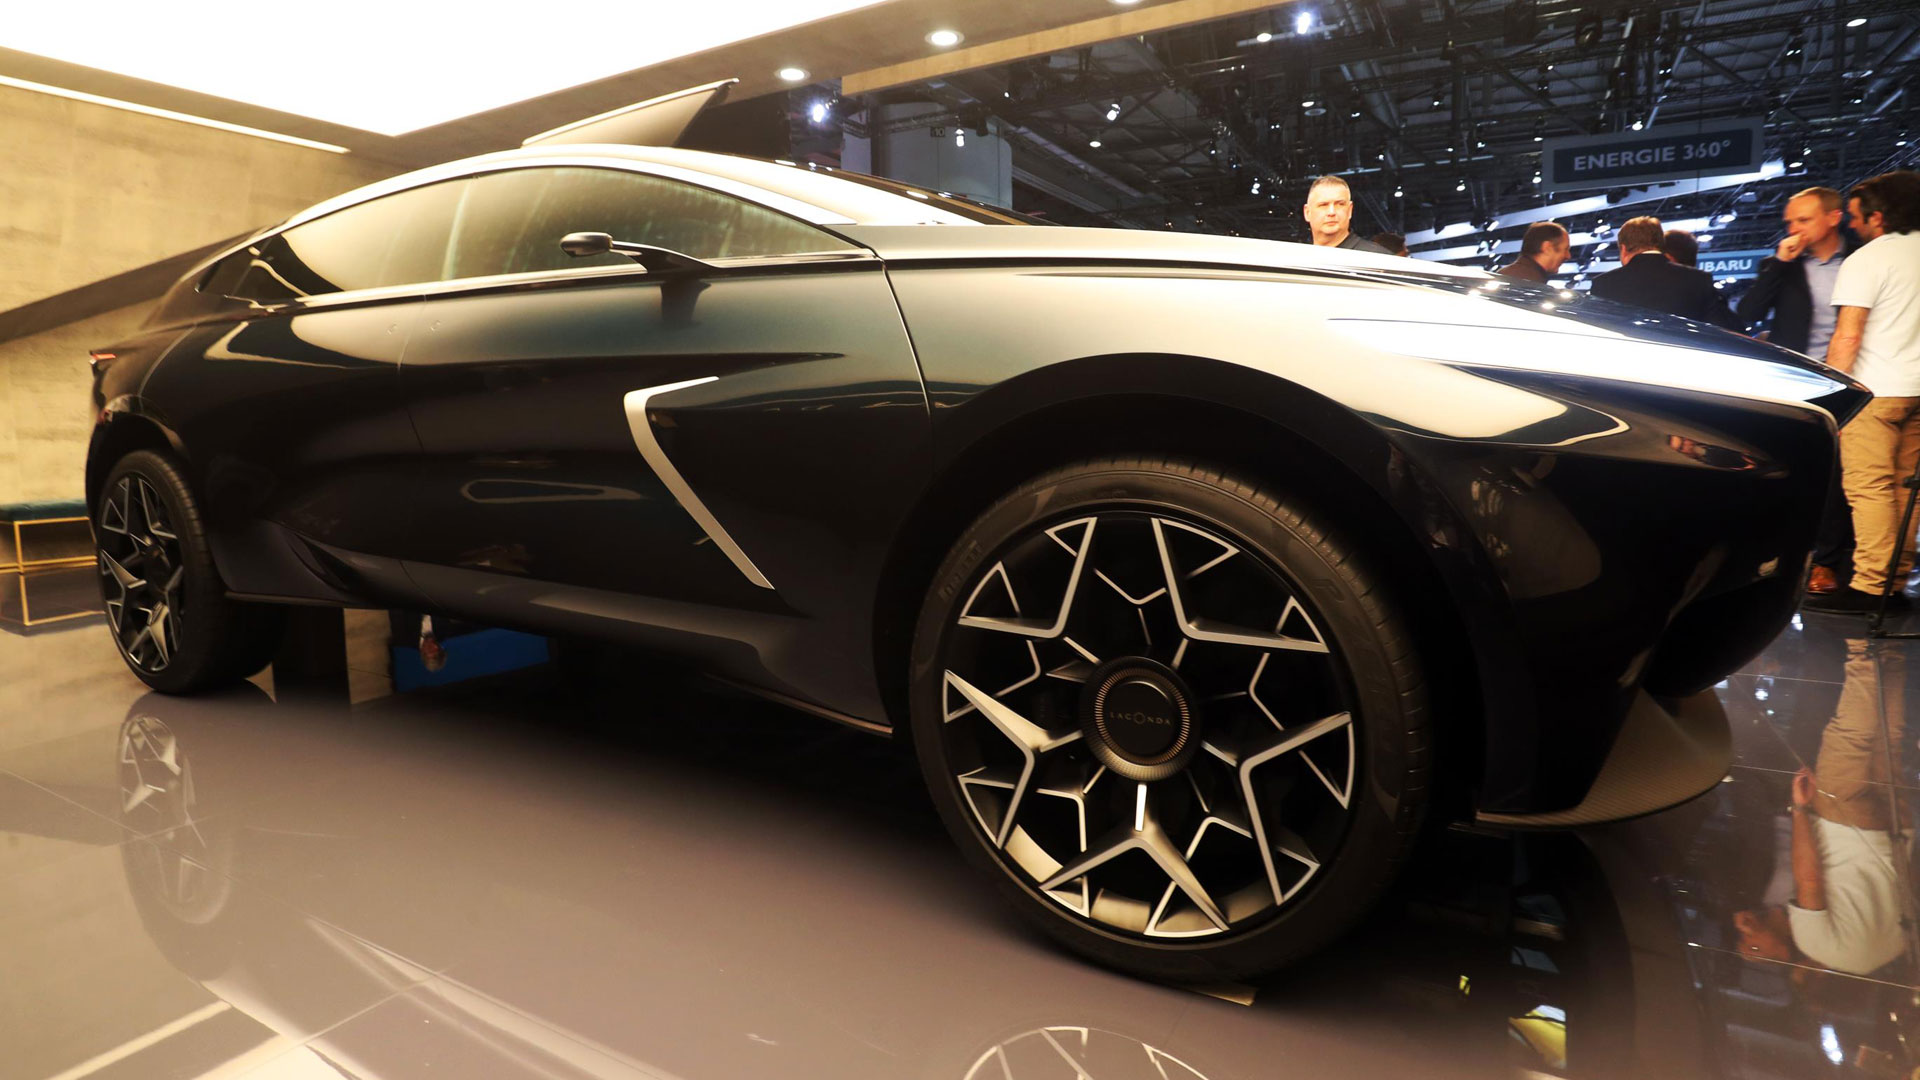 Aston Martin Lagonda All-Terrain Concept